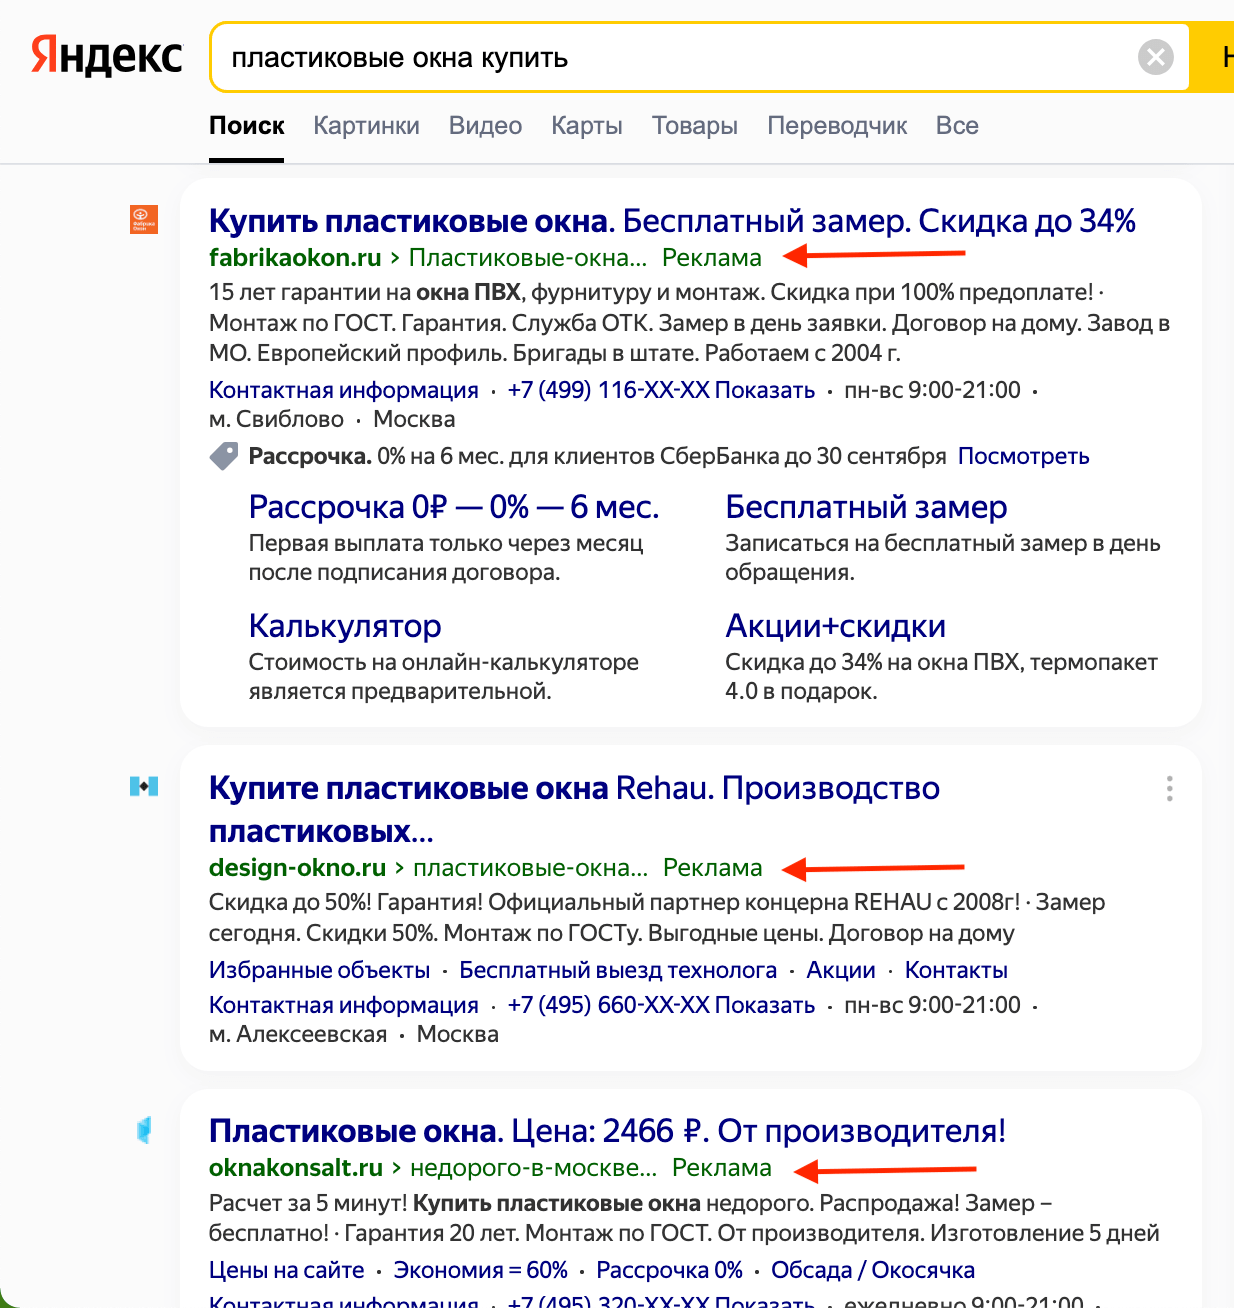 Контекстная реклама в поиске «Яндекса»